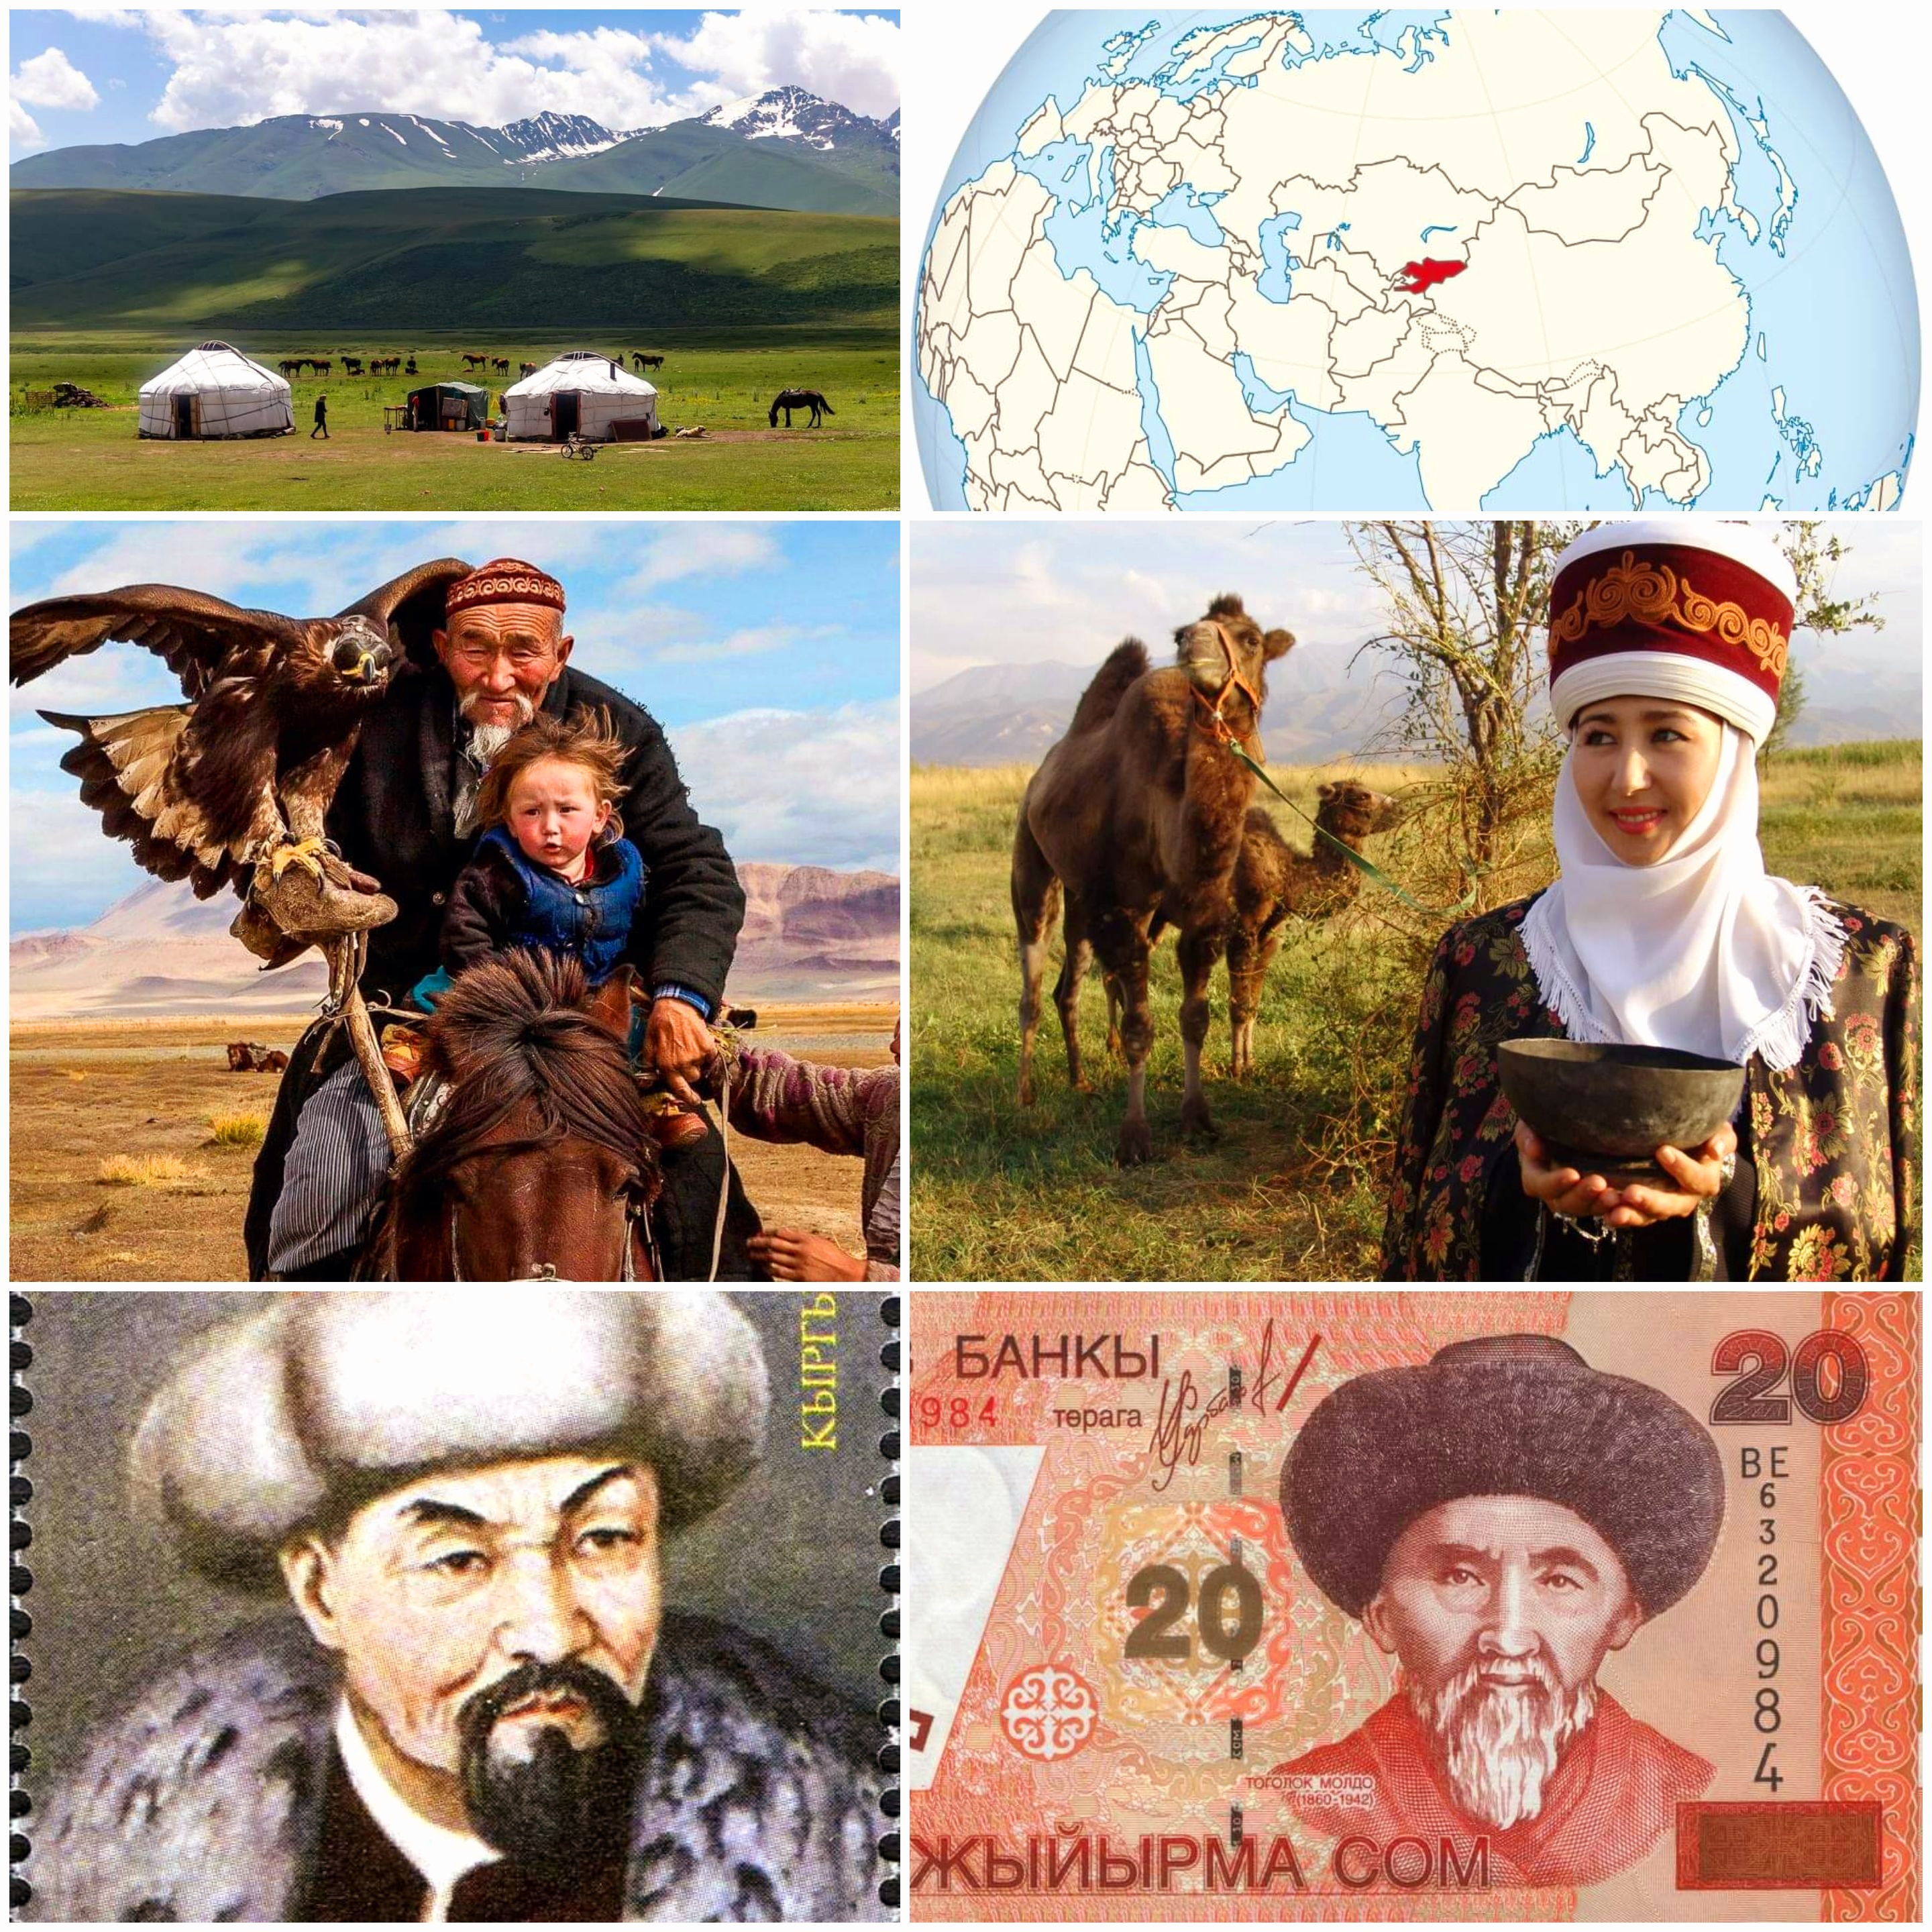 شعب "القرغيز"، أحد الشعوب التركية، وهم بدو السهوب، ويشتركون مع الشعب الكازاخي في هذا الوصف.